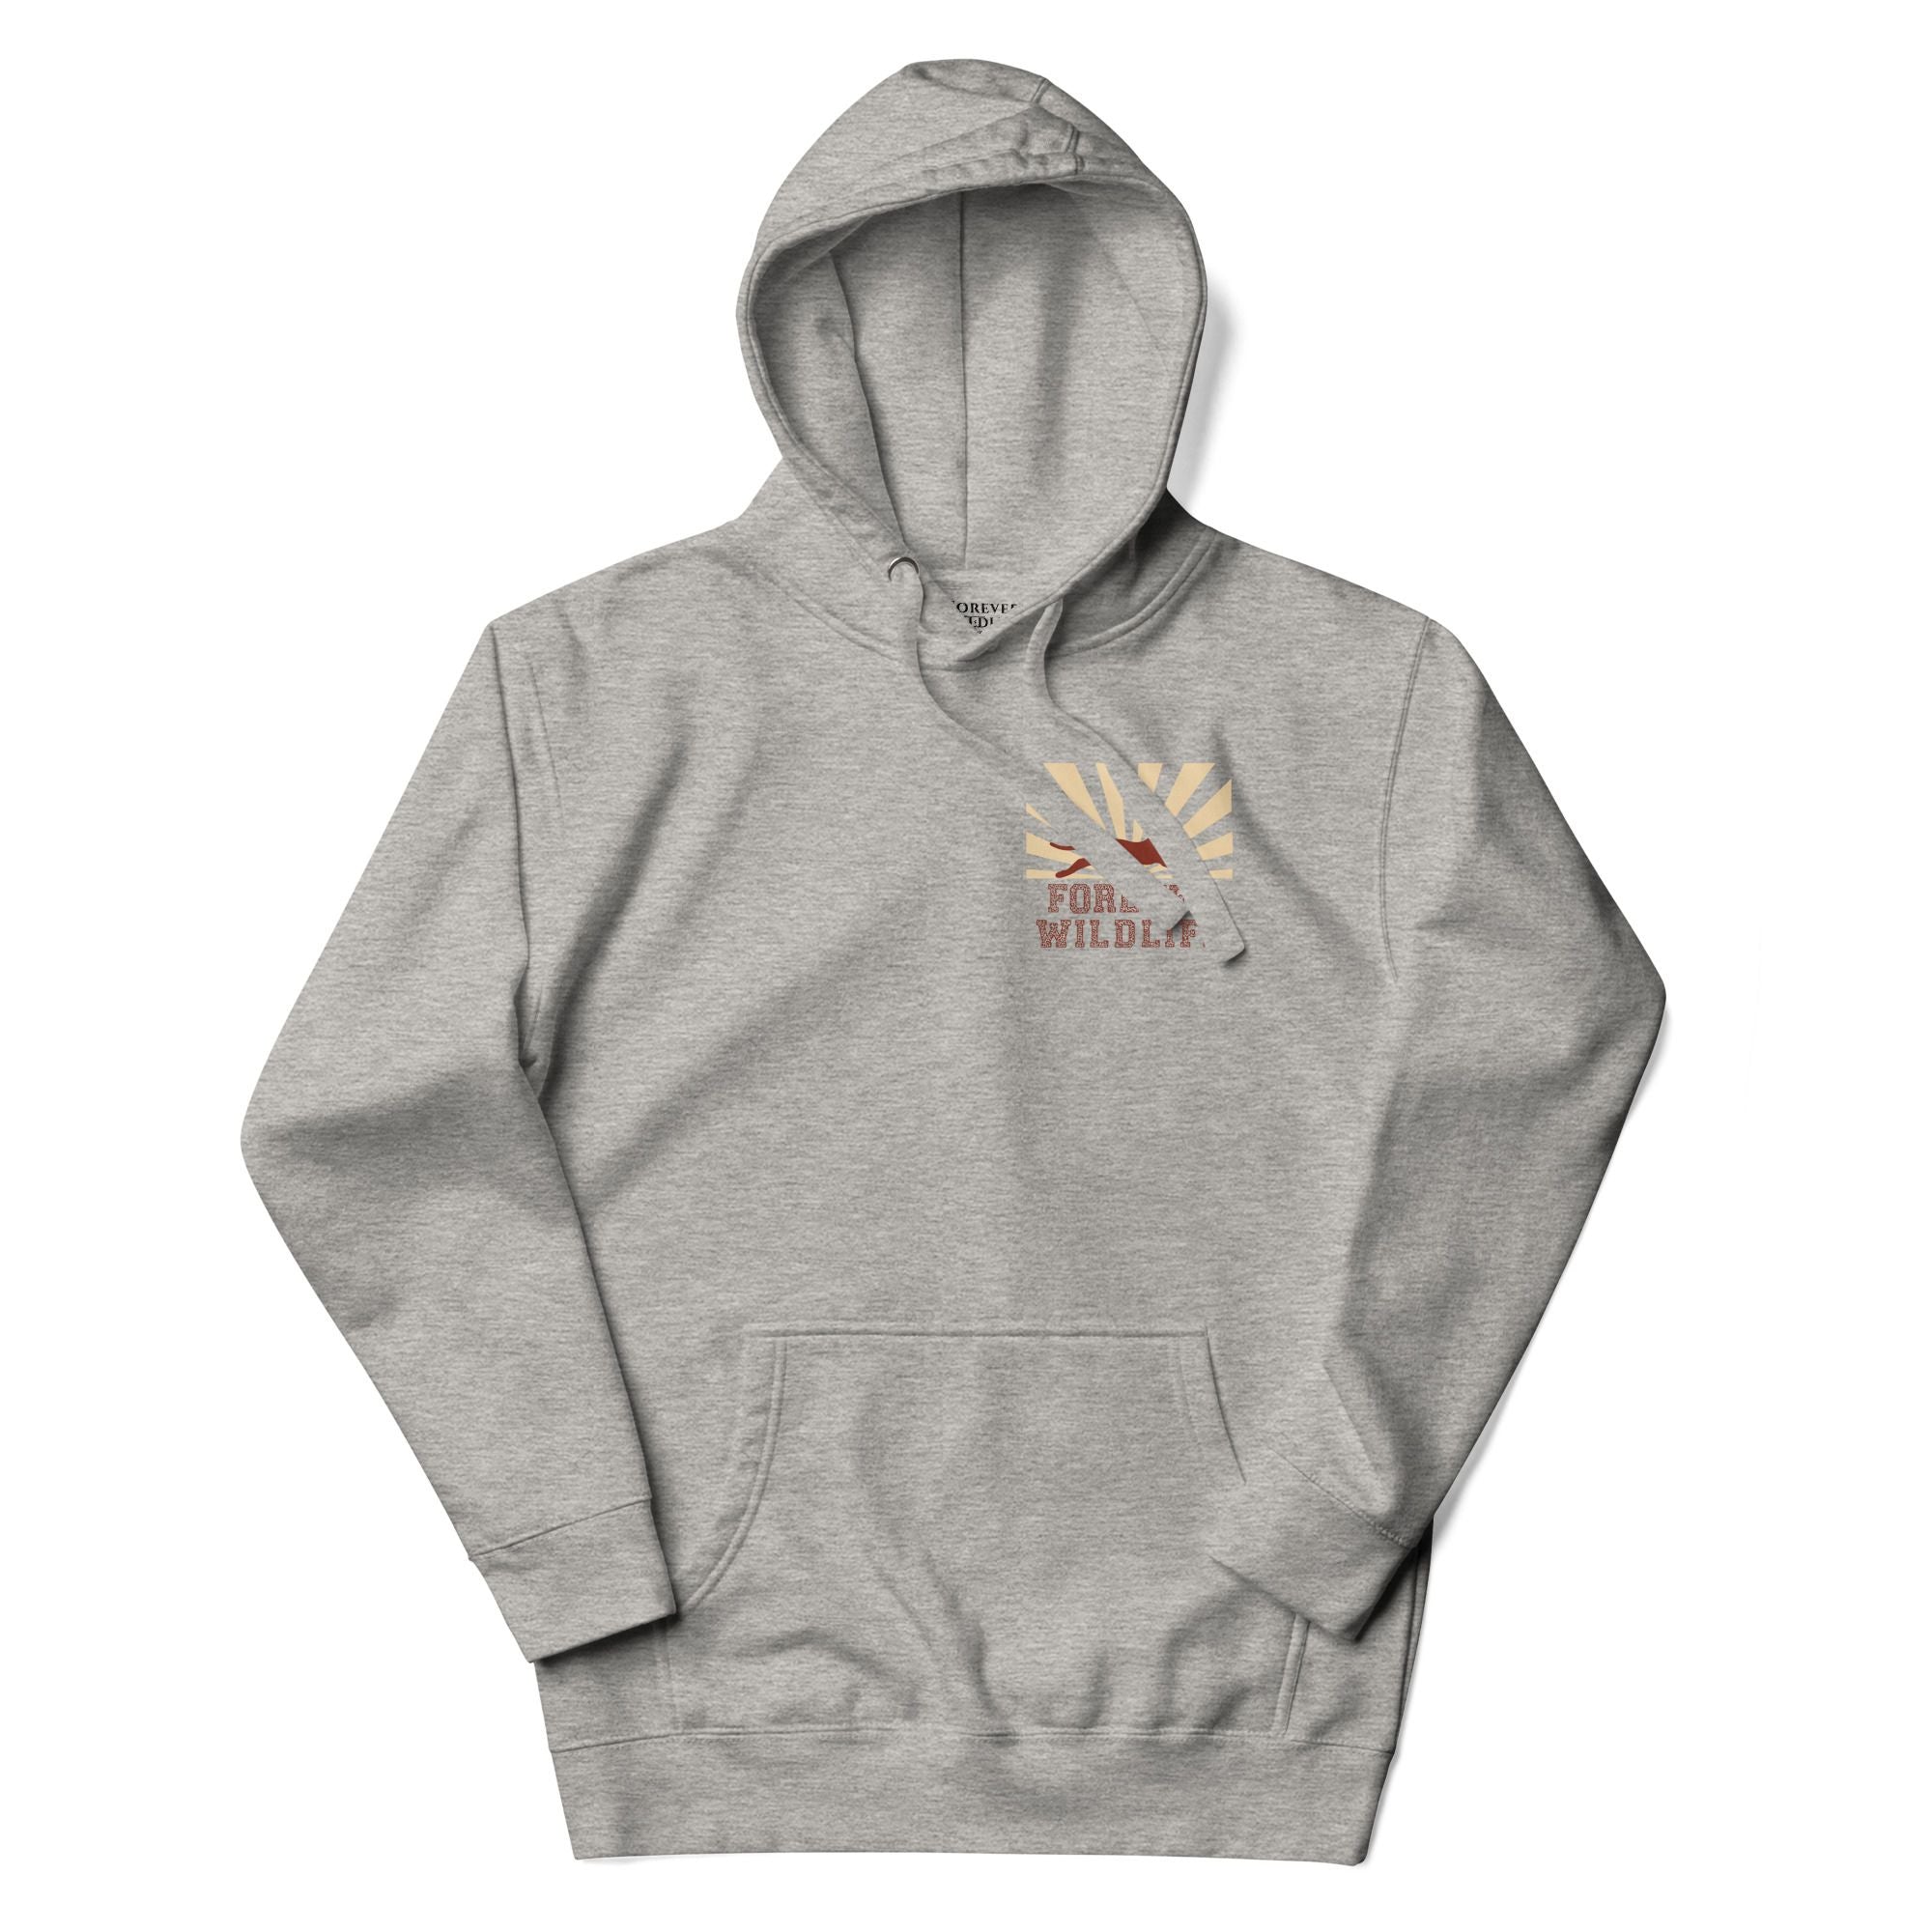 Cheetah Hoodie, beautiful grey Cheetah hoodie with cheetah graphics made by Forever Wildlife Wildlife hoodies.